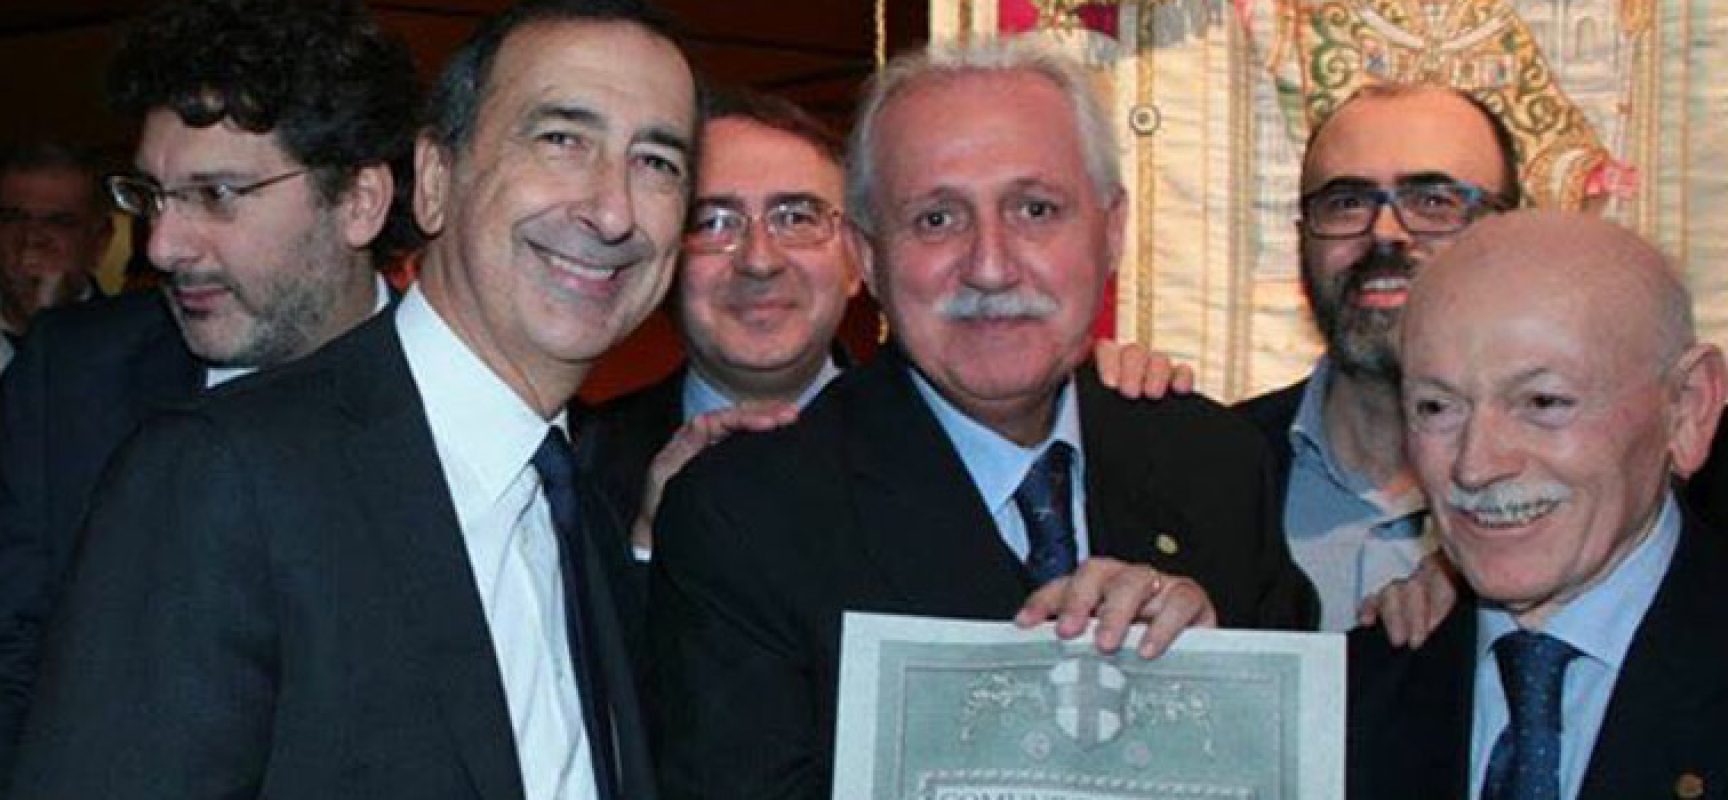 Associazione regionale pugliesi a Milano premiata con l’Ambrogino d’oro, intervista a Pino Selvaggi